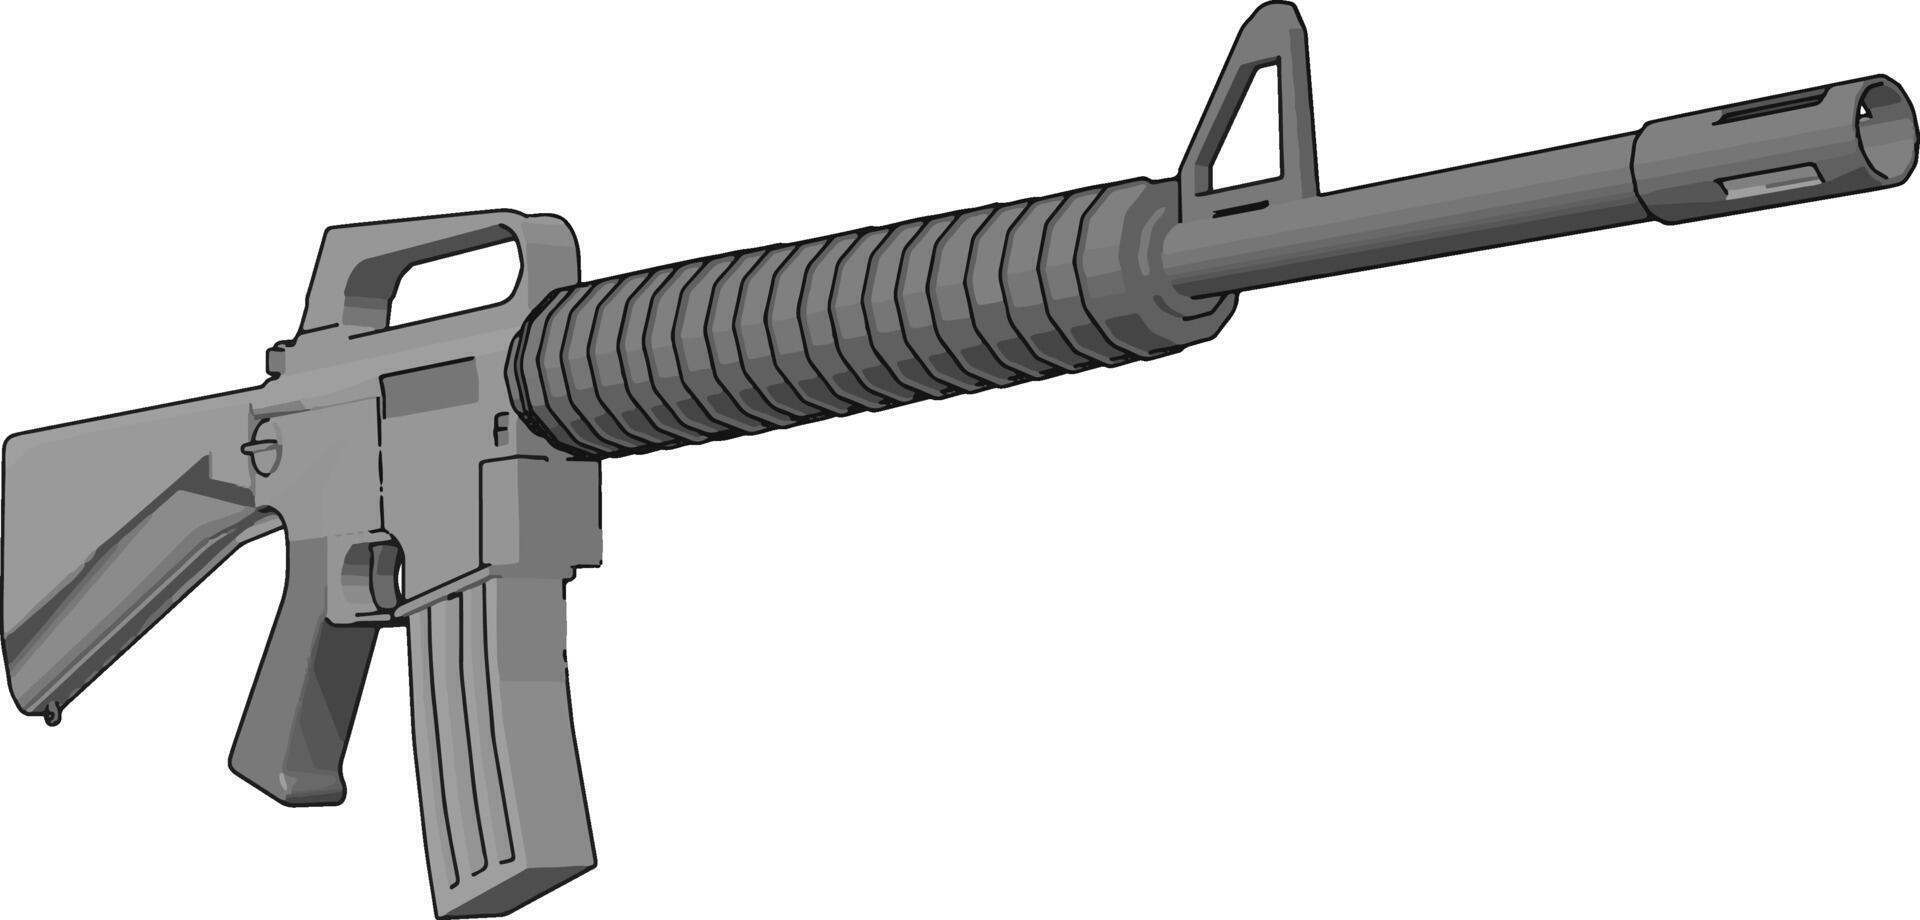 fusil militaire, illustration, vecteur sur fond blanc.